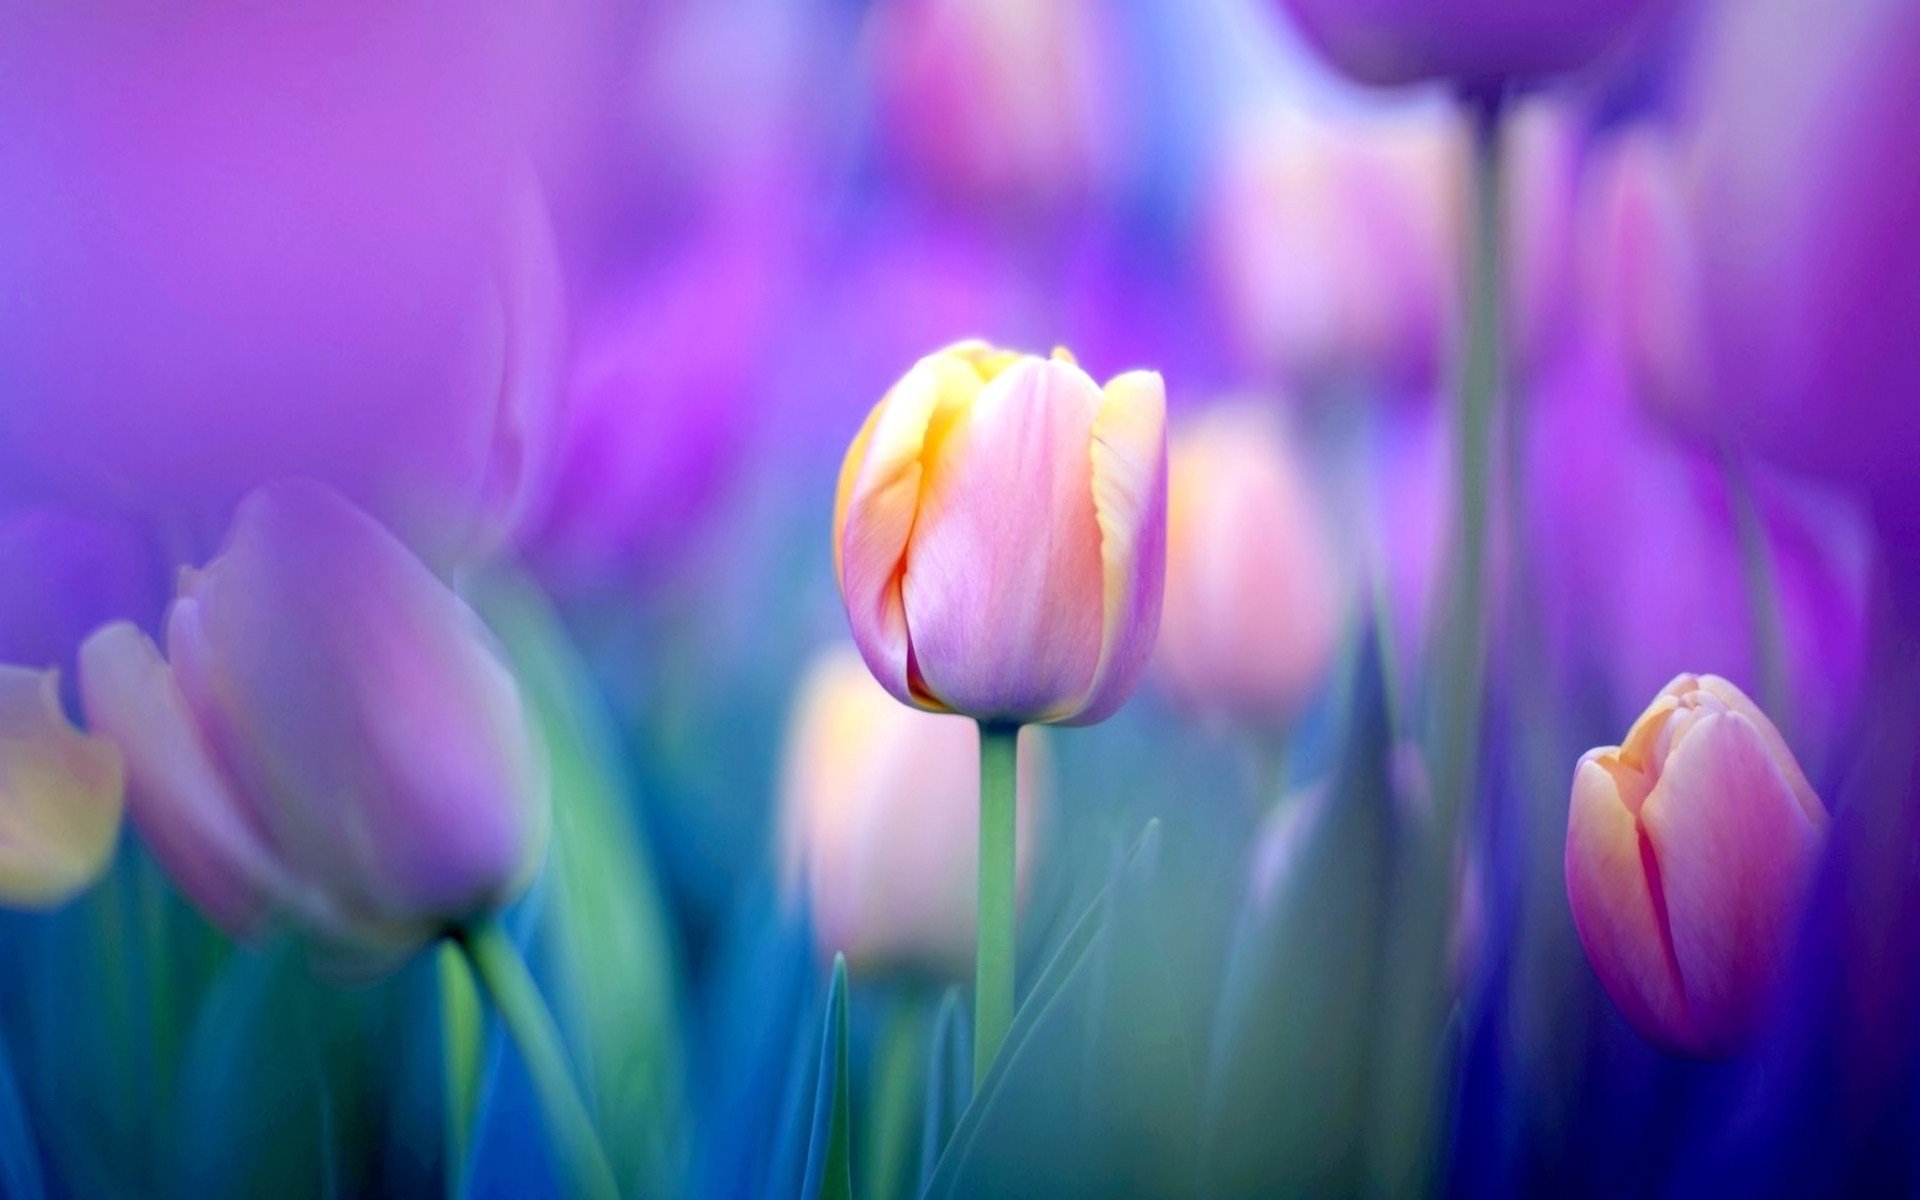 gambar bunga tulip cantik